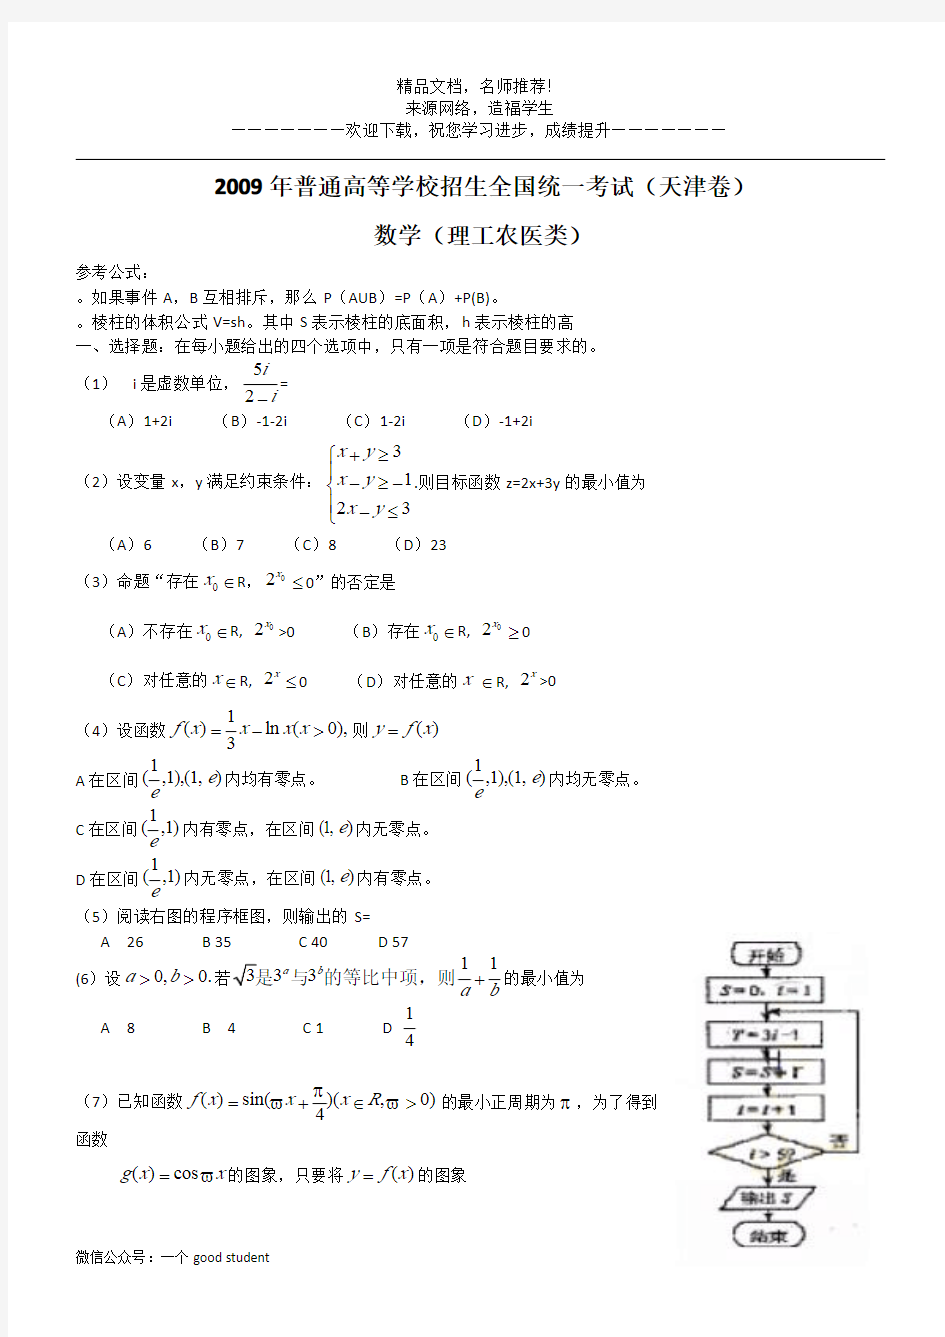 2009年高考真题——理科数学(天津卷)